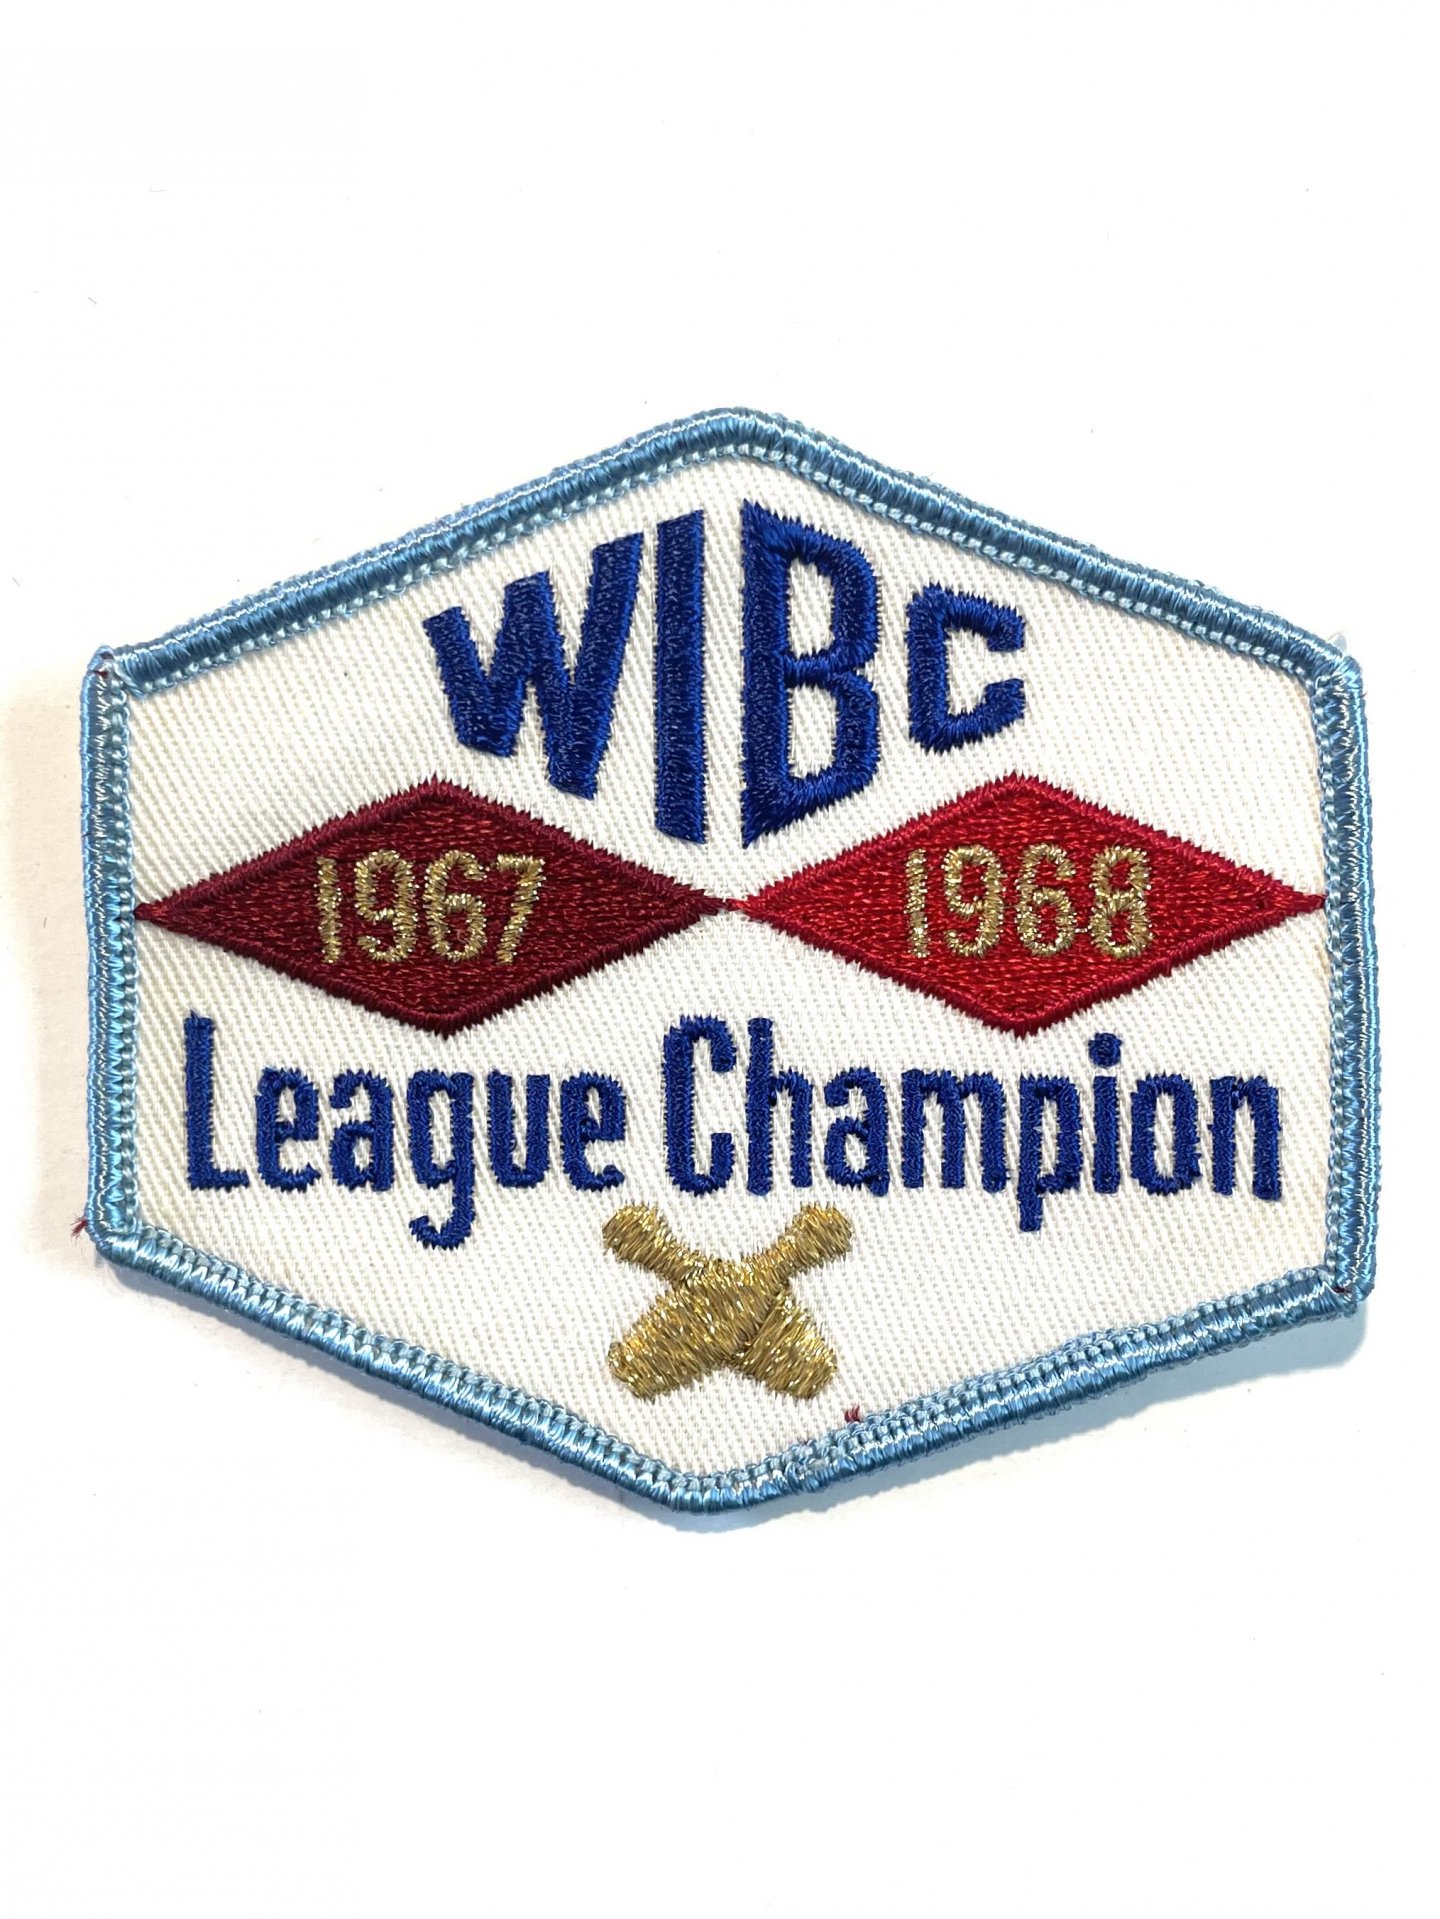 1967-68 